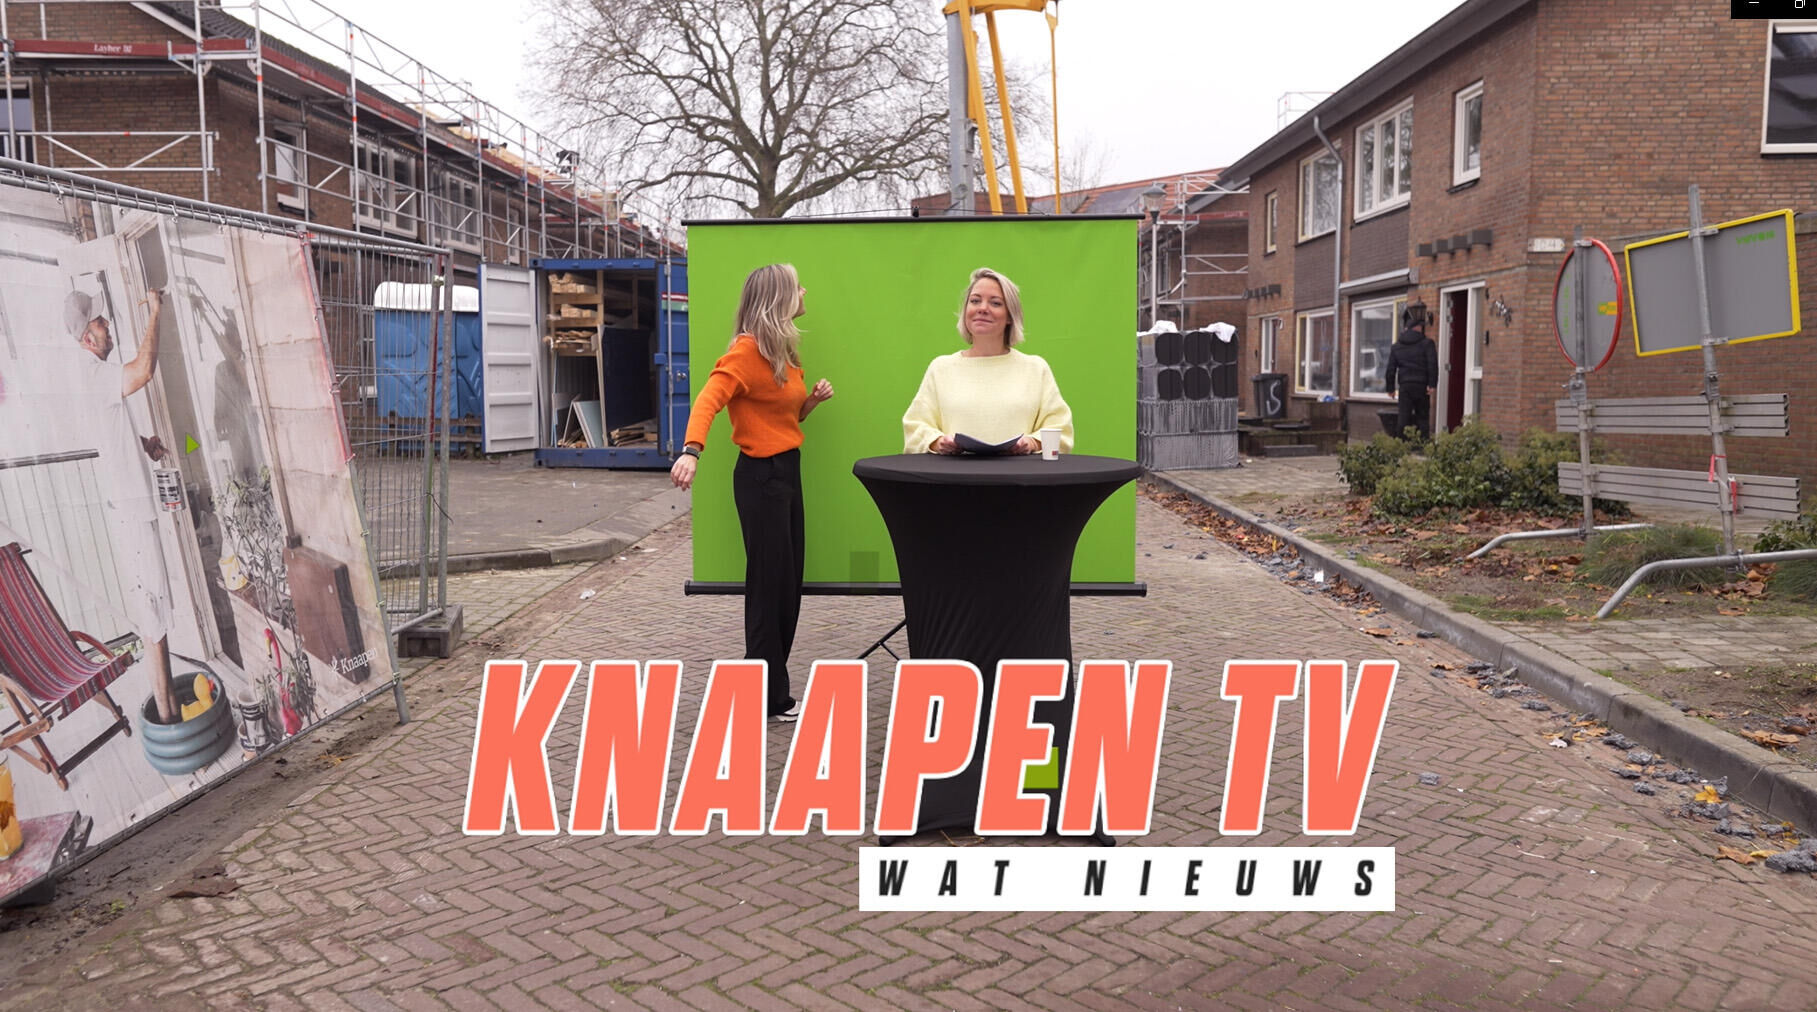 KnaapenTV - Samen scoren we een 8.1 bij onze opdrachtgevers